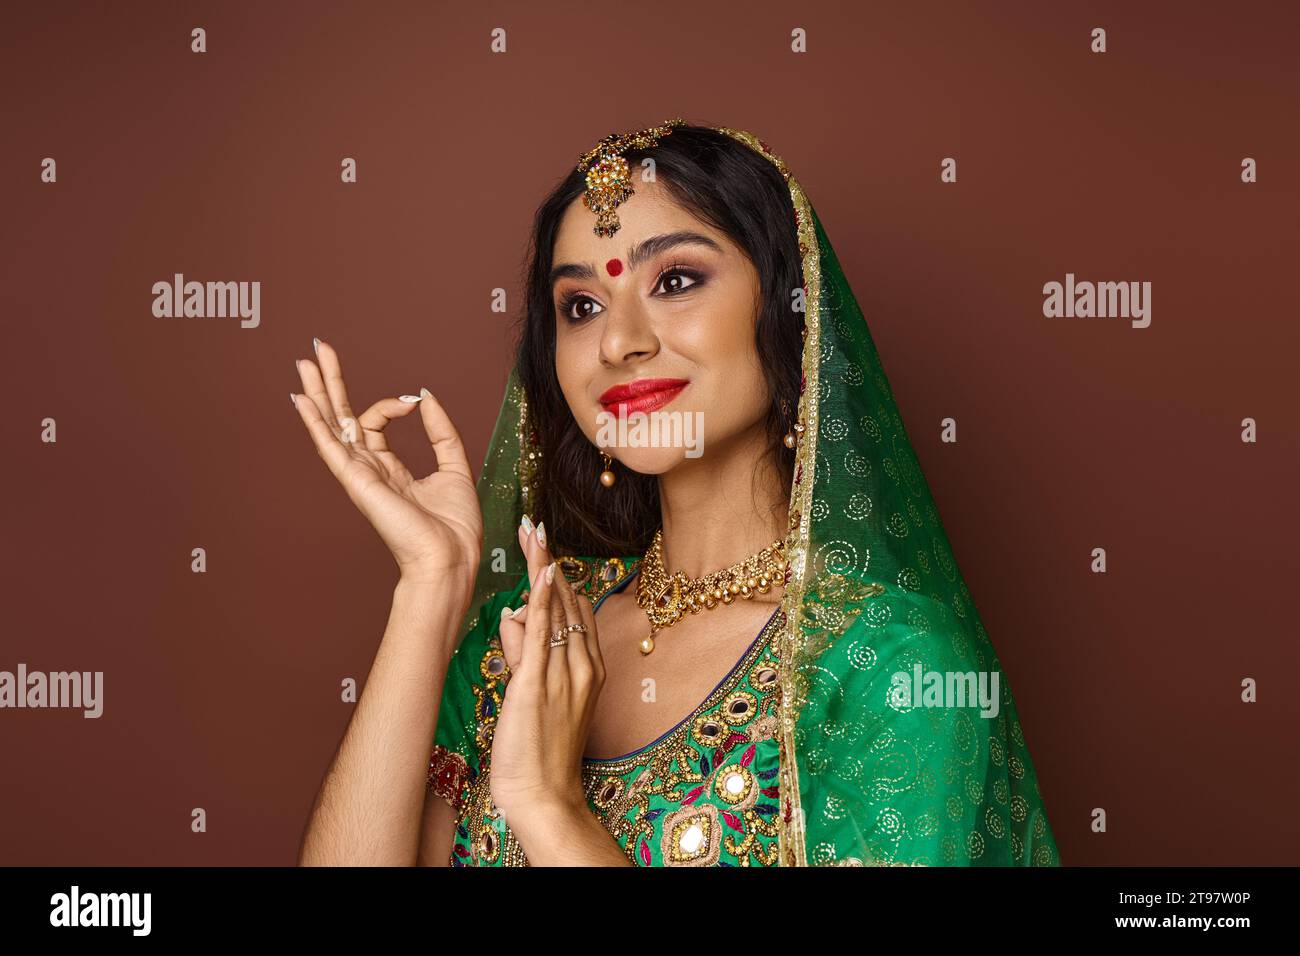 jolie femme indienne en costume national avec bindi et voile vert gestionnant et regardant loin Banque D'Images